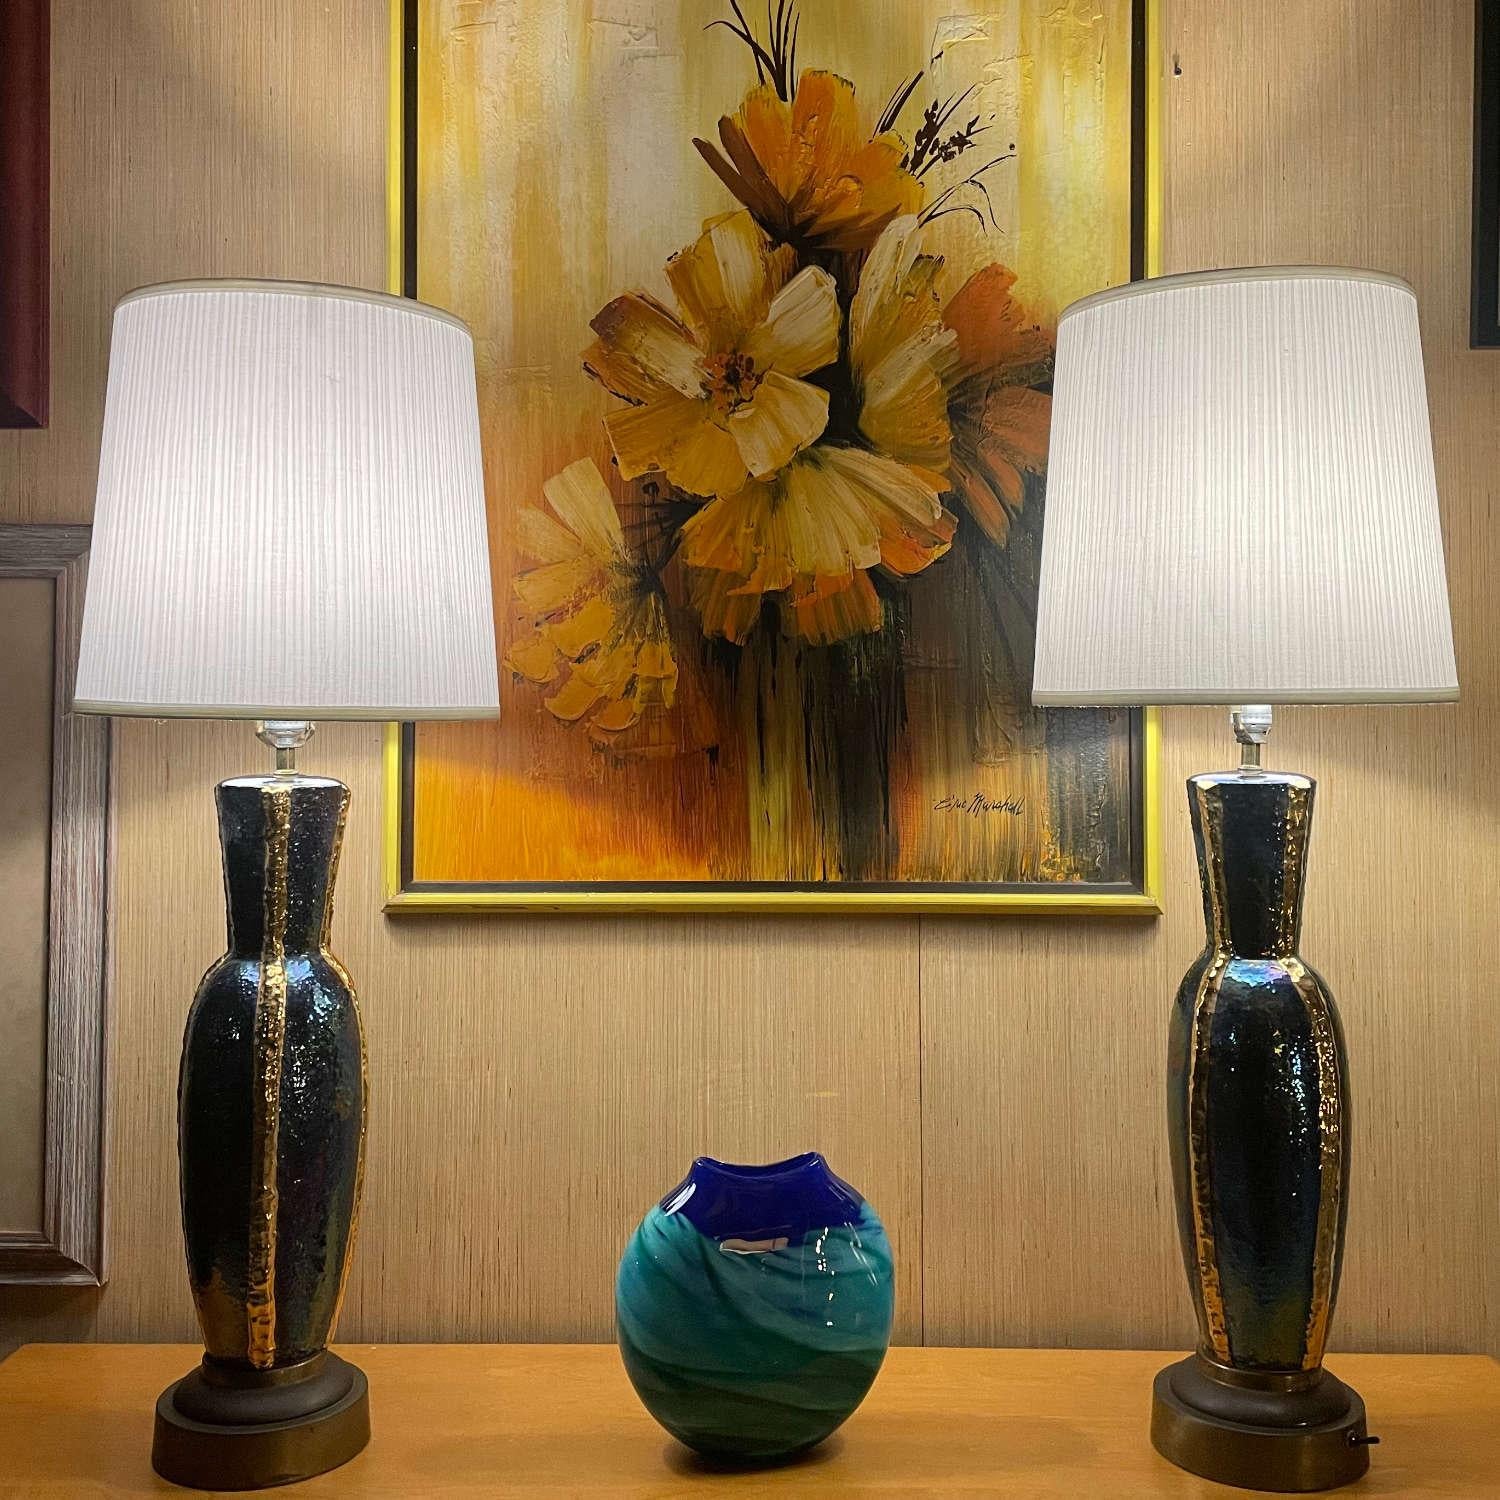 Paire de lampes de table irisées bleues et or de style moderne du milieu du siècle dernier. Les élégantes lampes semblent changer de couleur lorsque la lumière joue avec l'émail de la céramique. Des bandes métalliques dorées traversent verticalement